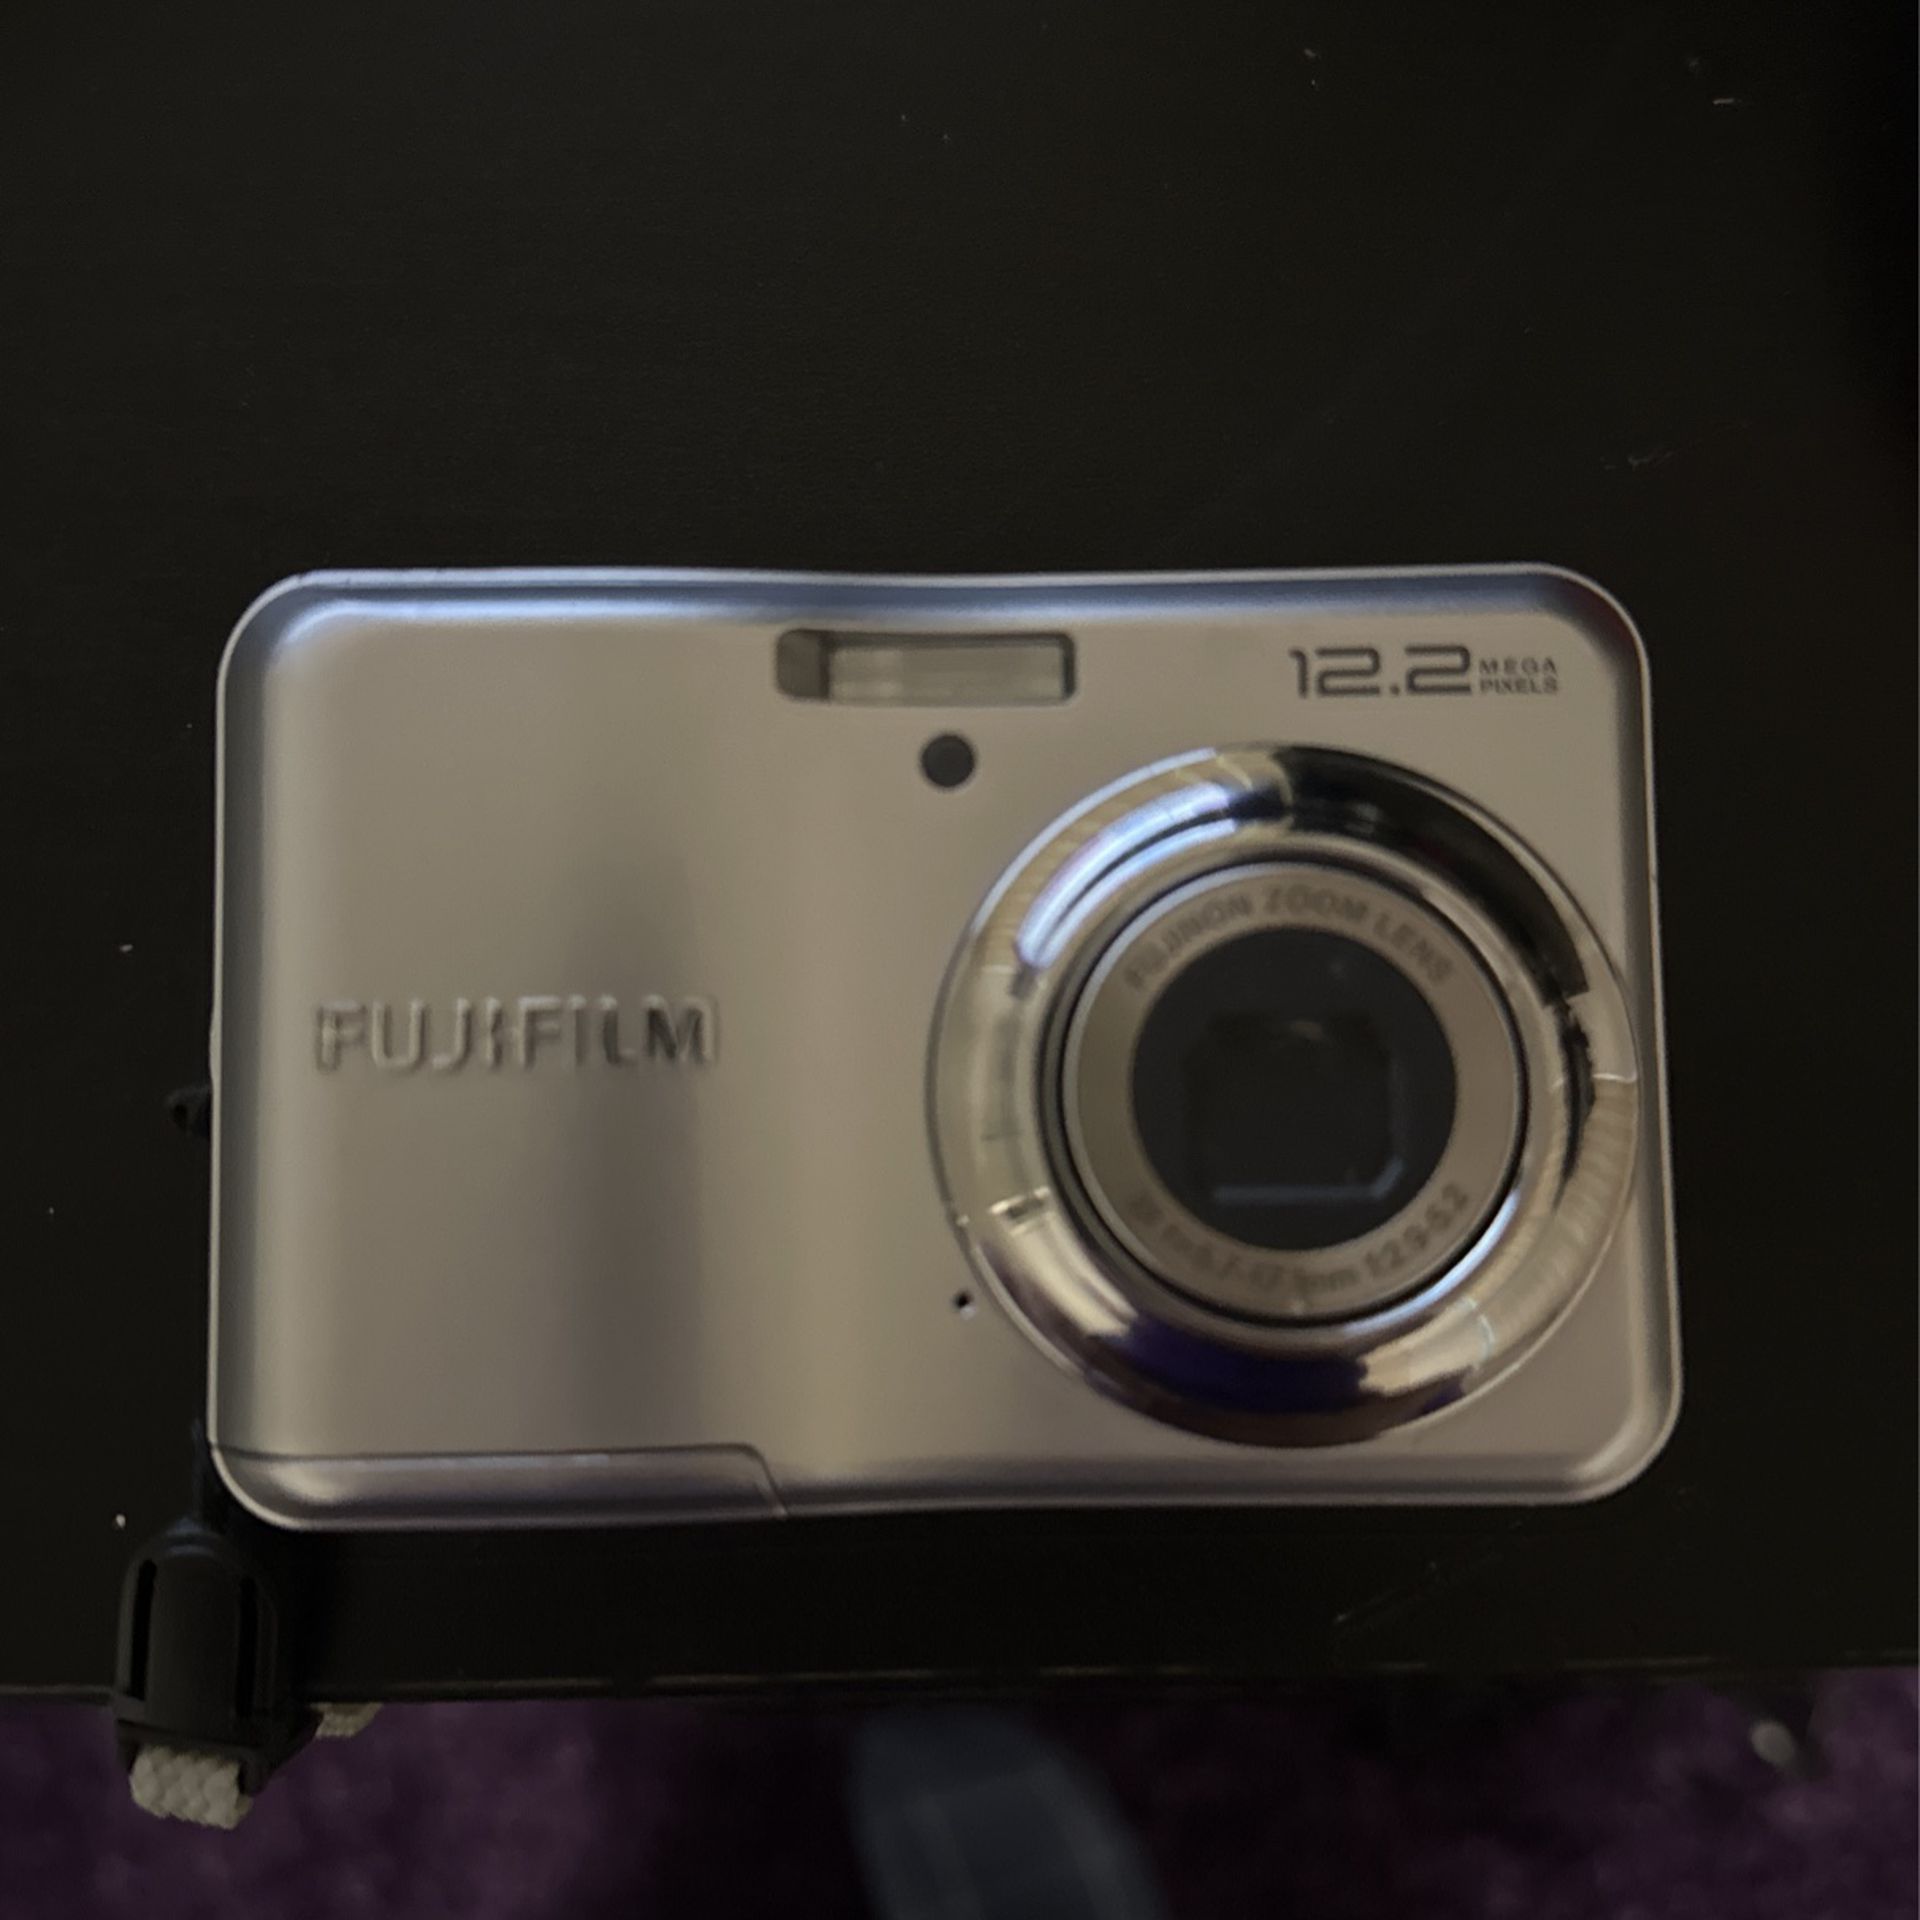 Fuji Camera 12.2 A220